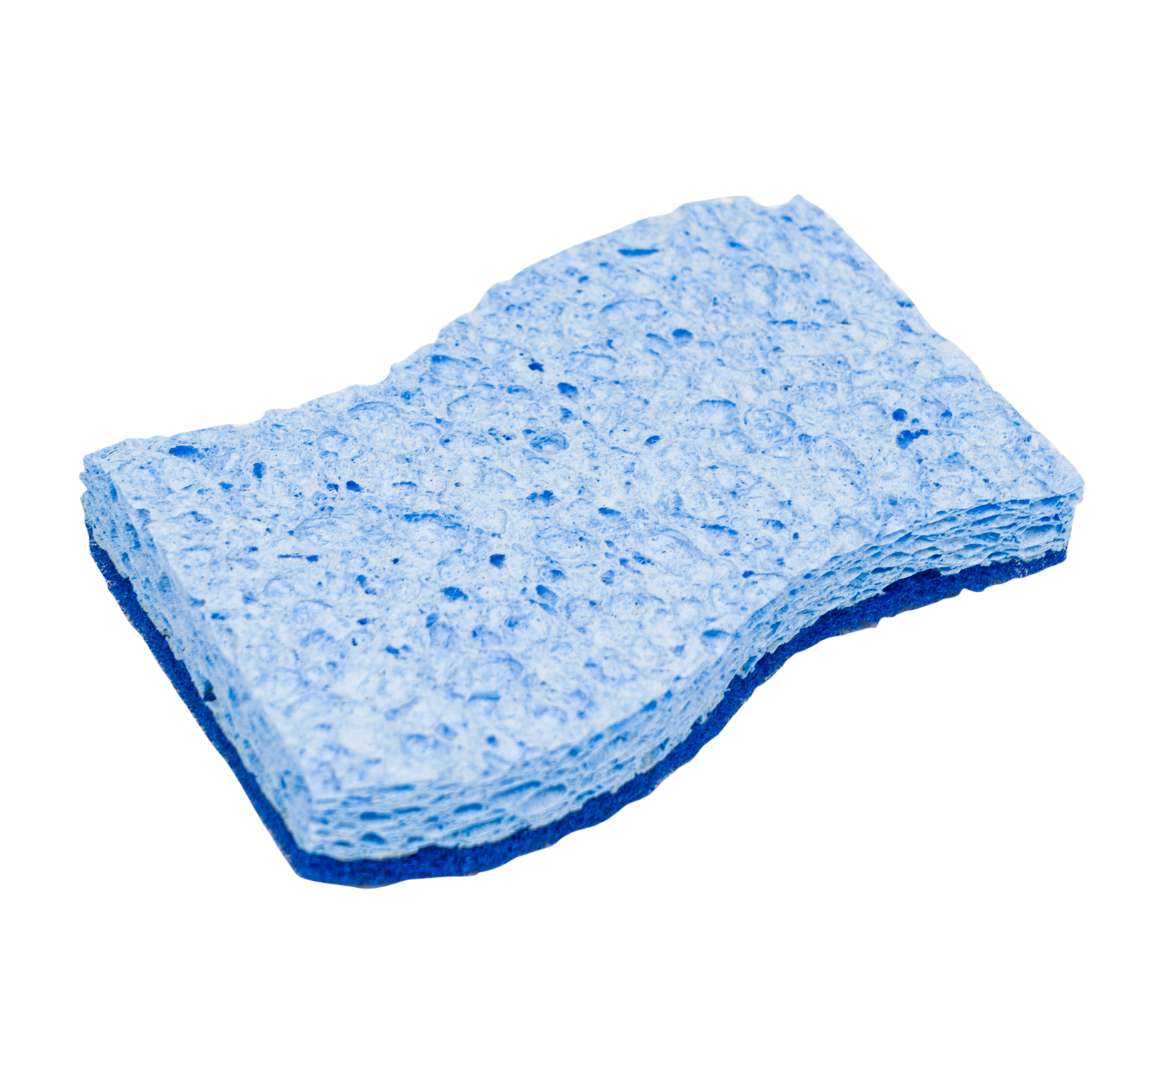 Bulk Non-Scratch Sponges 4.09 x 2.4 - Buy Wholesale Cleaning Items